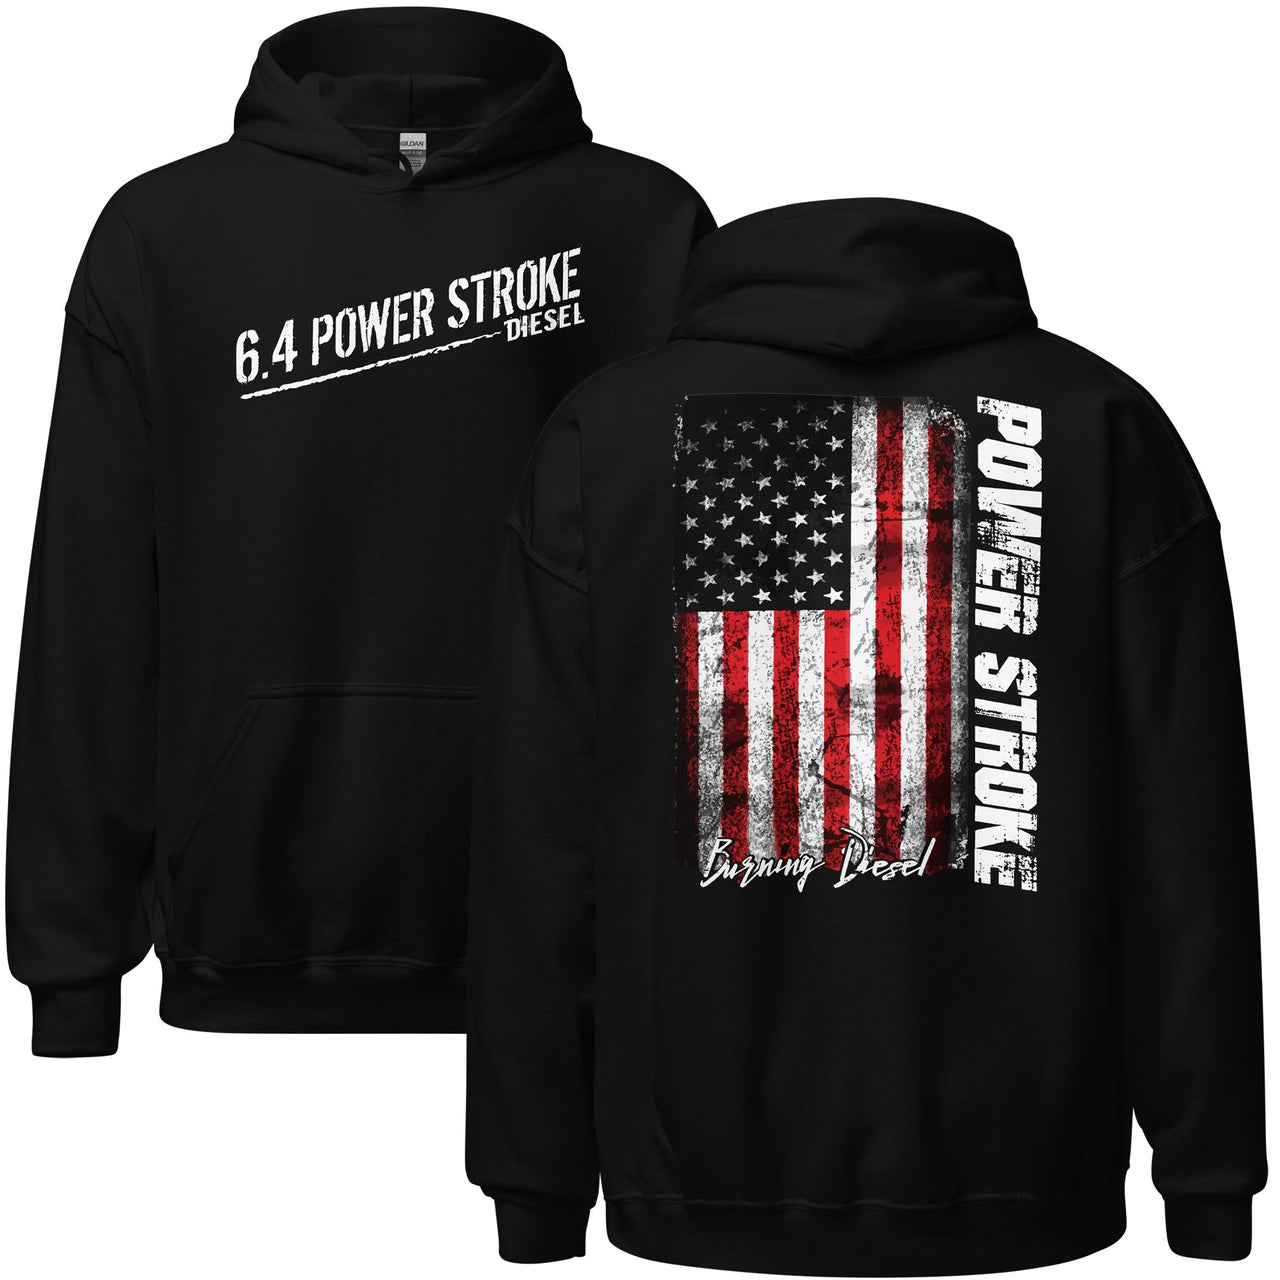 6.4 Powerstroke hoodie in black